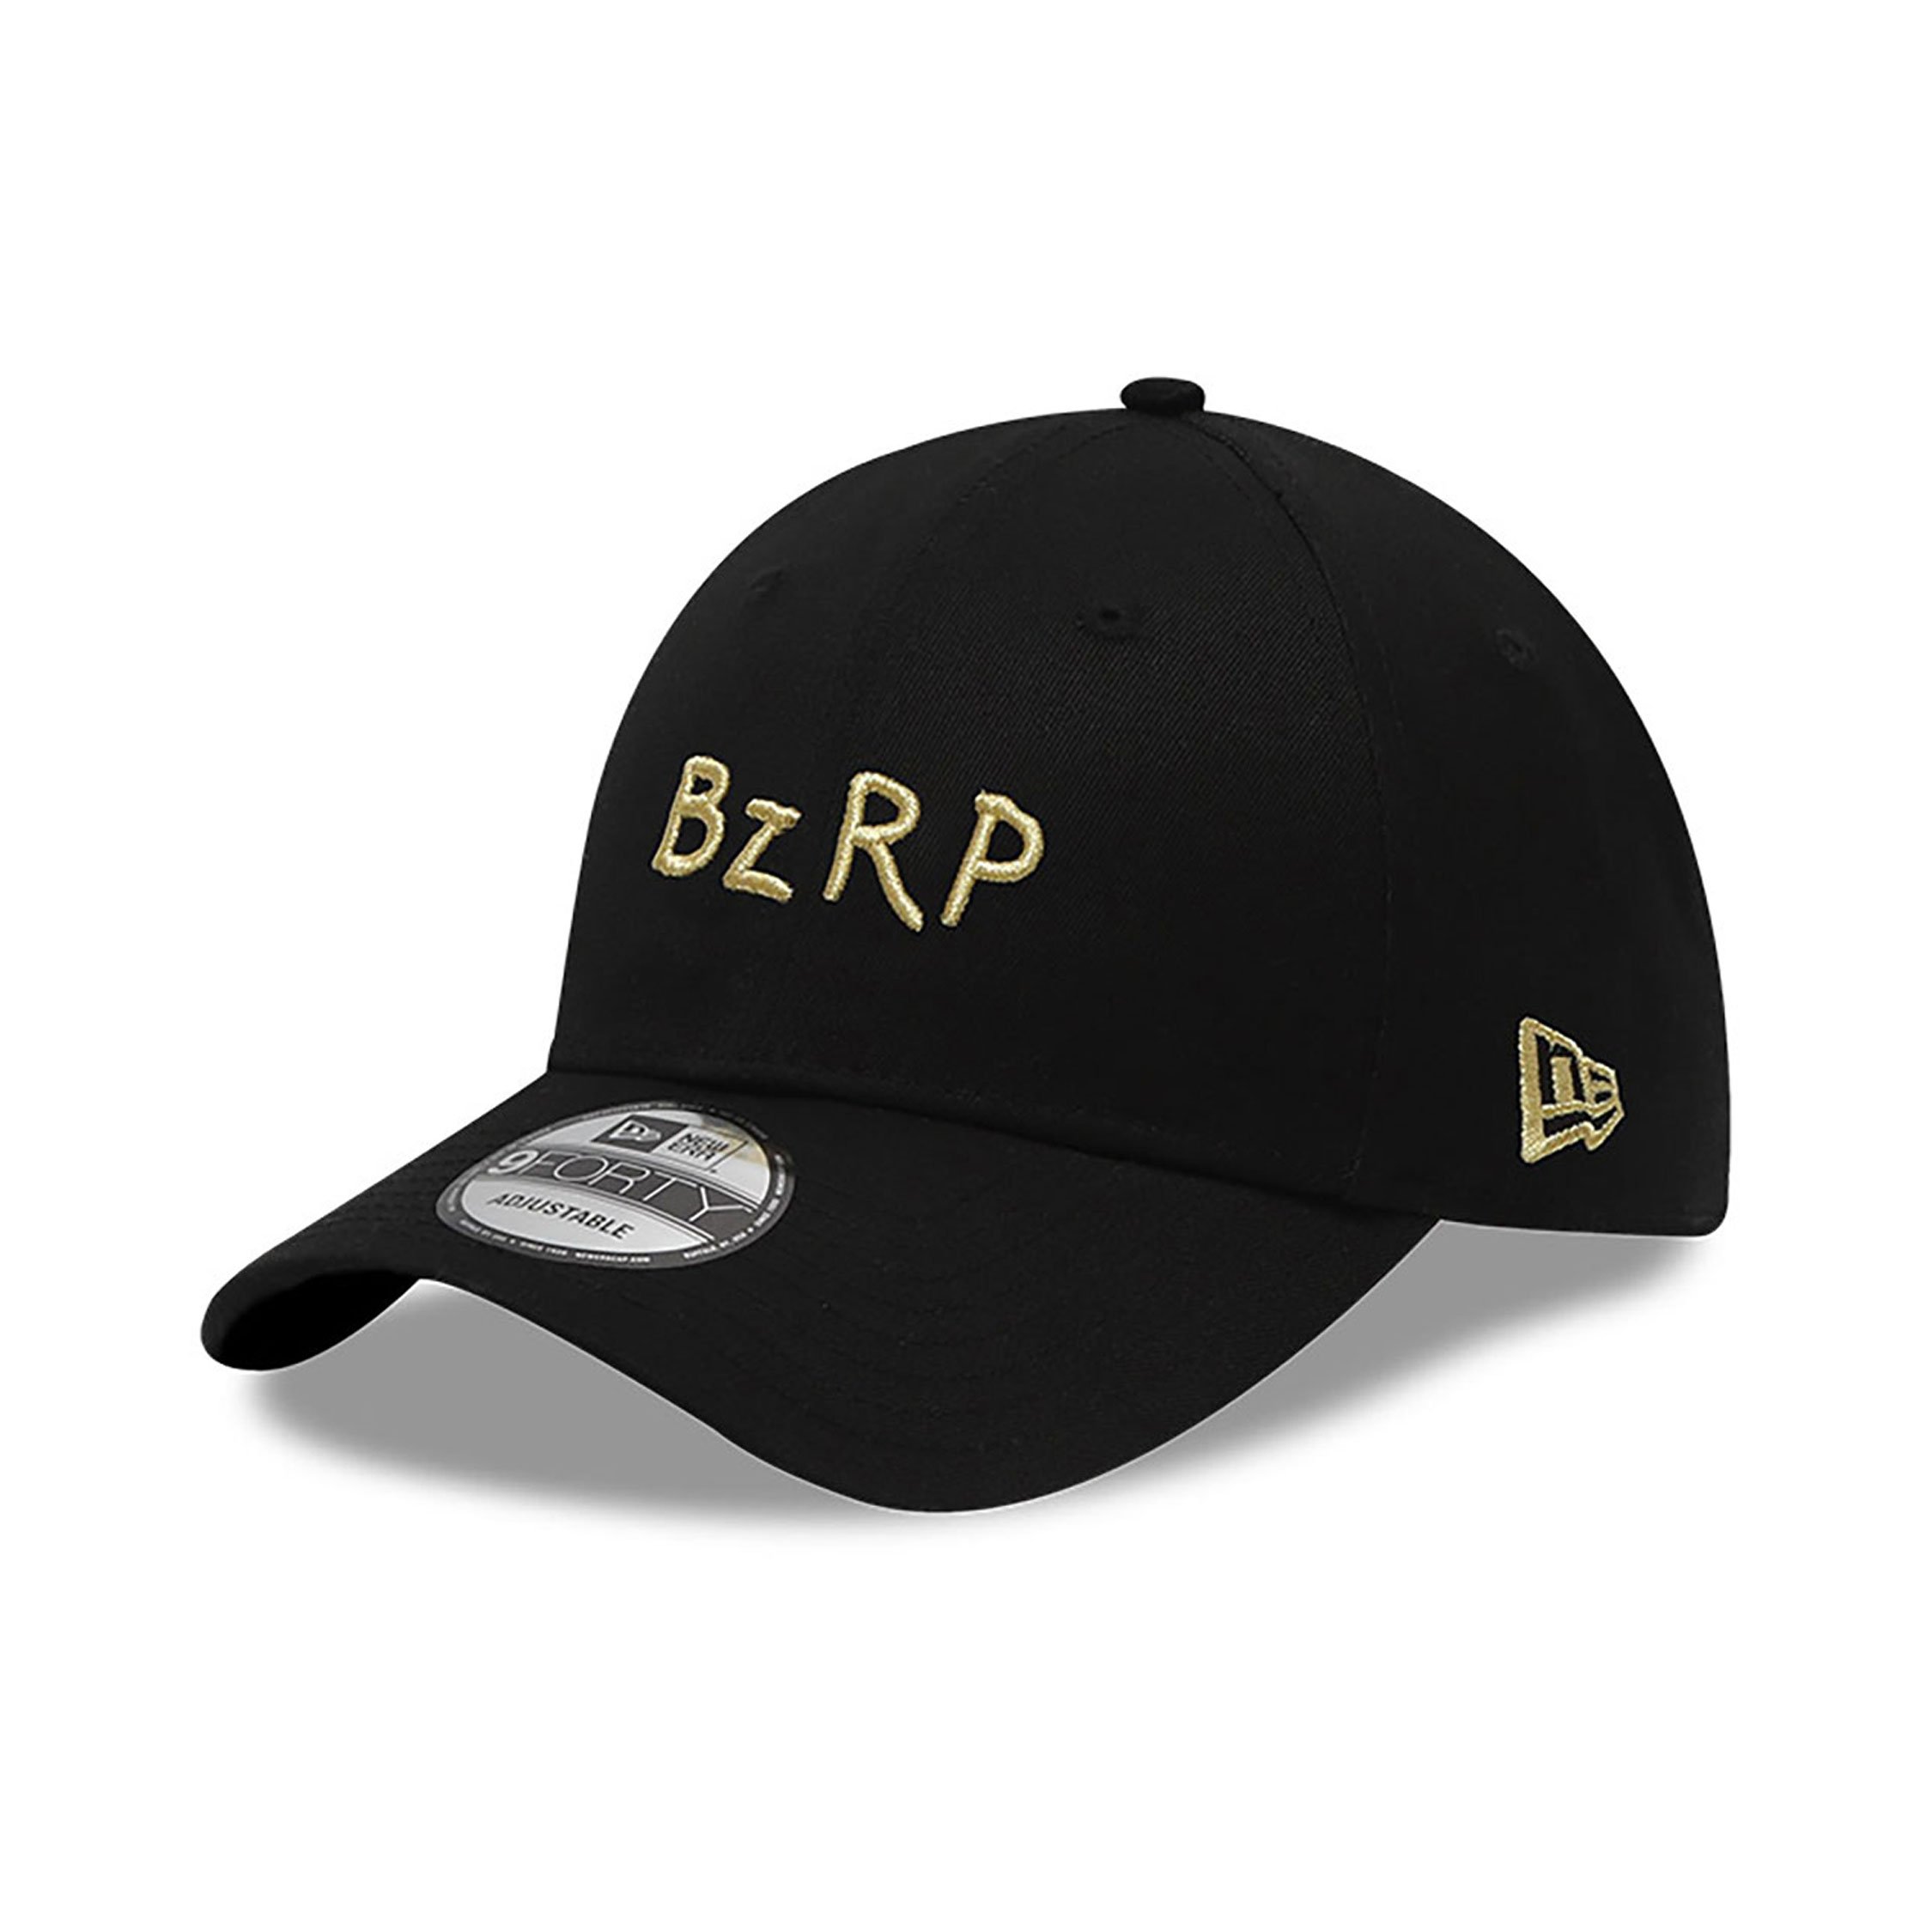 New Era Bizarrap 9FORTY Adjustable Cap Black